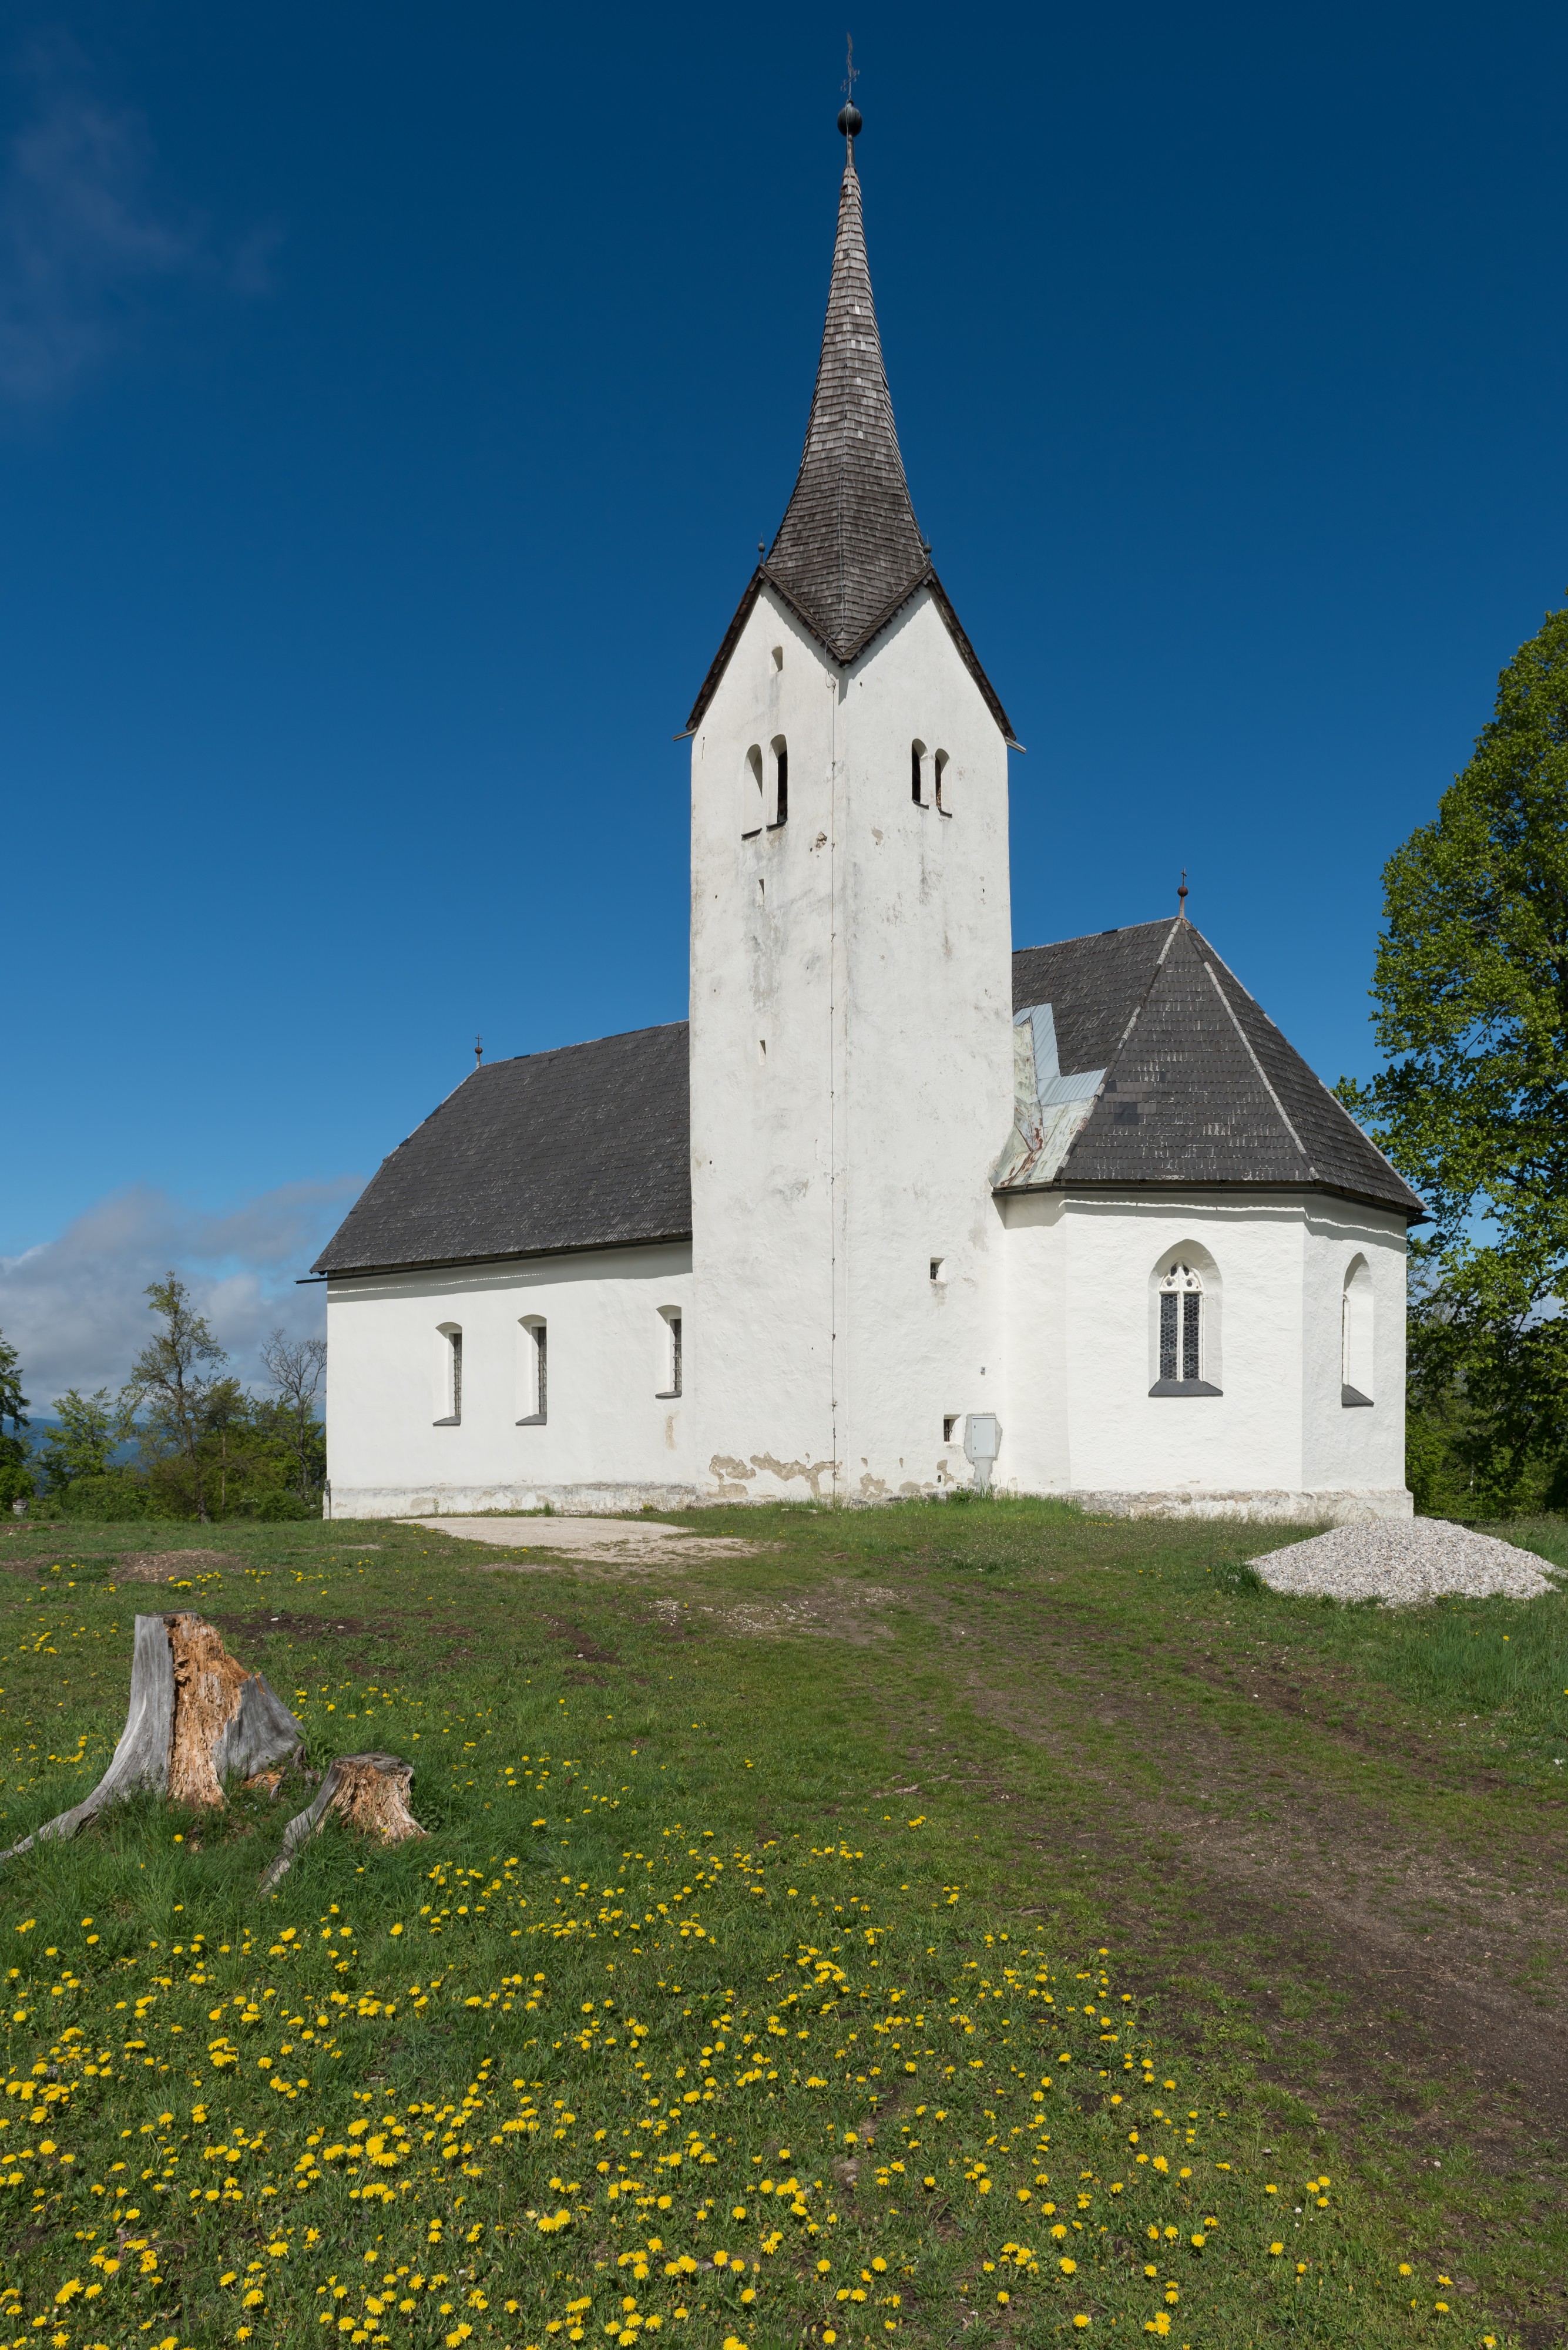 Globasnitz Hemmaberg Wallfahrtskirche Hll Hemma und Dorothea 02052015 3021